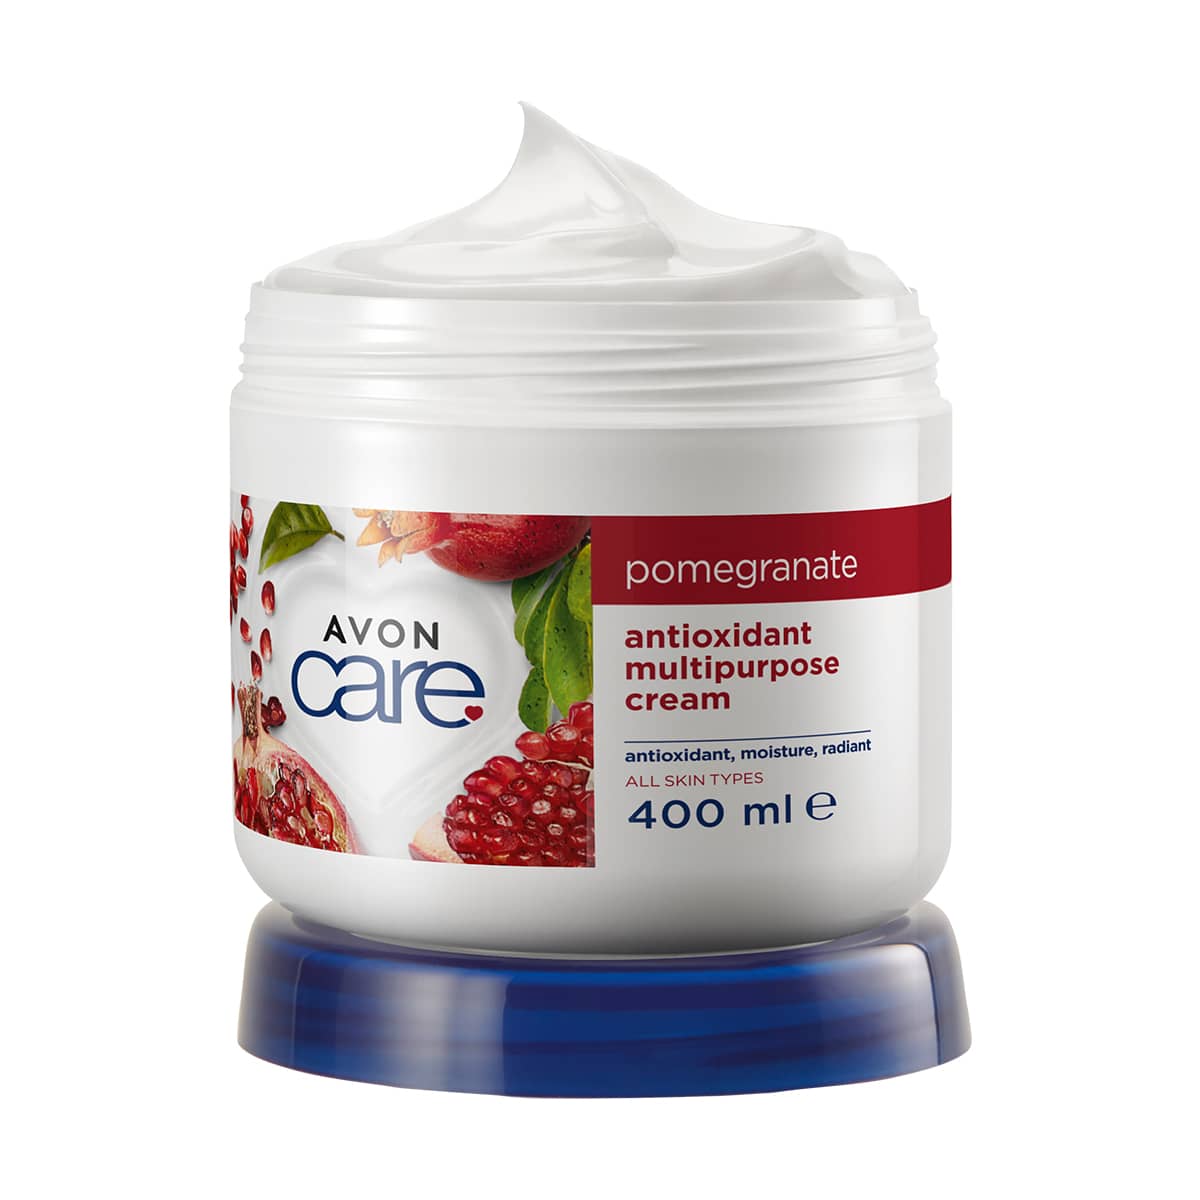 Avon Care Pomegranate Multipurpose Cream